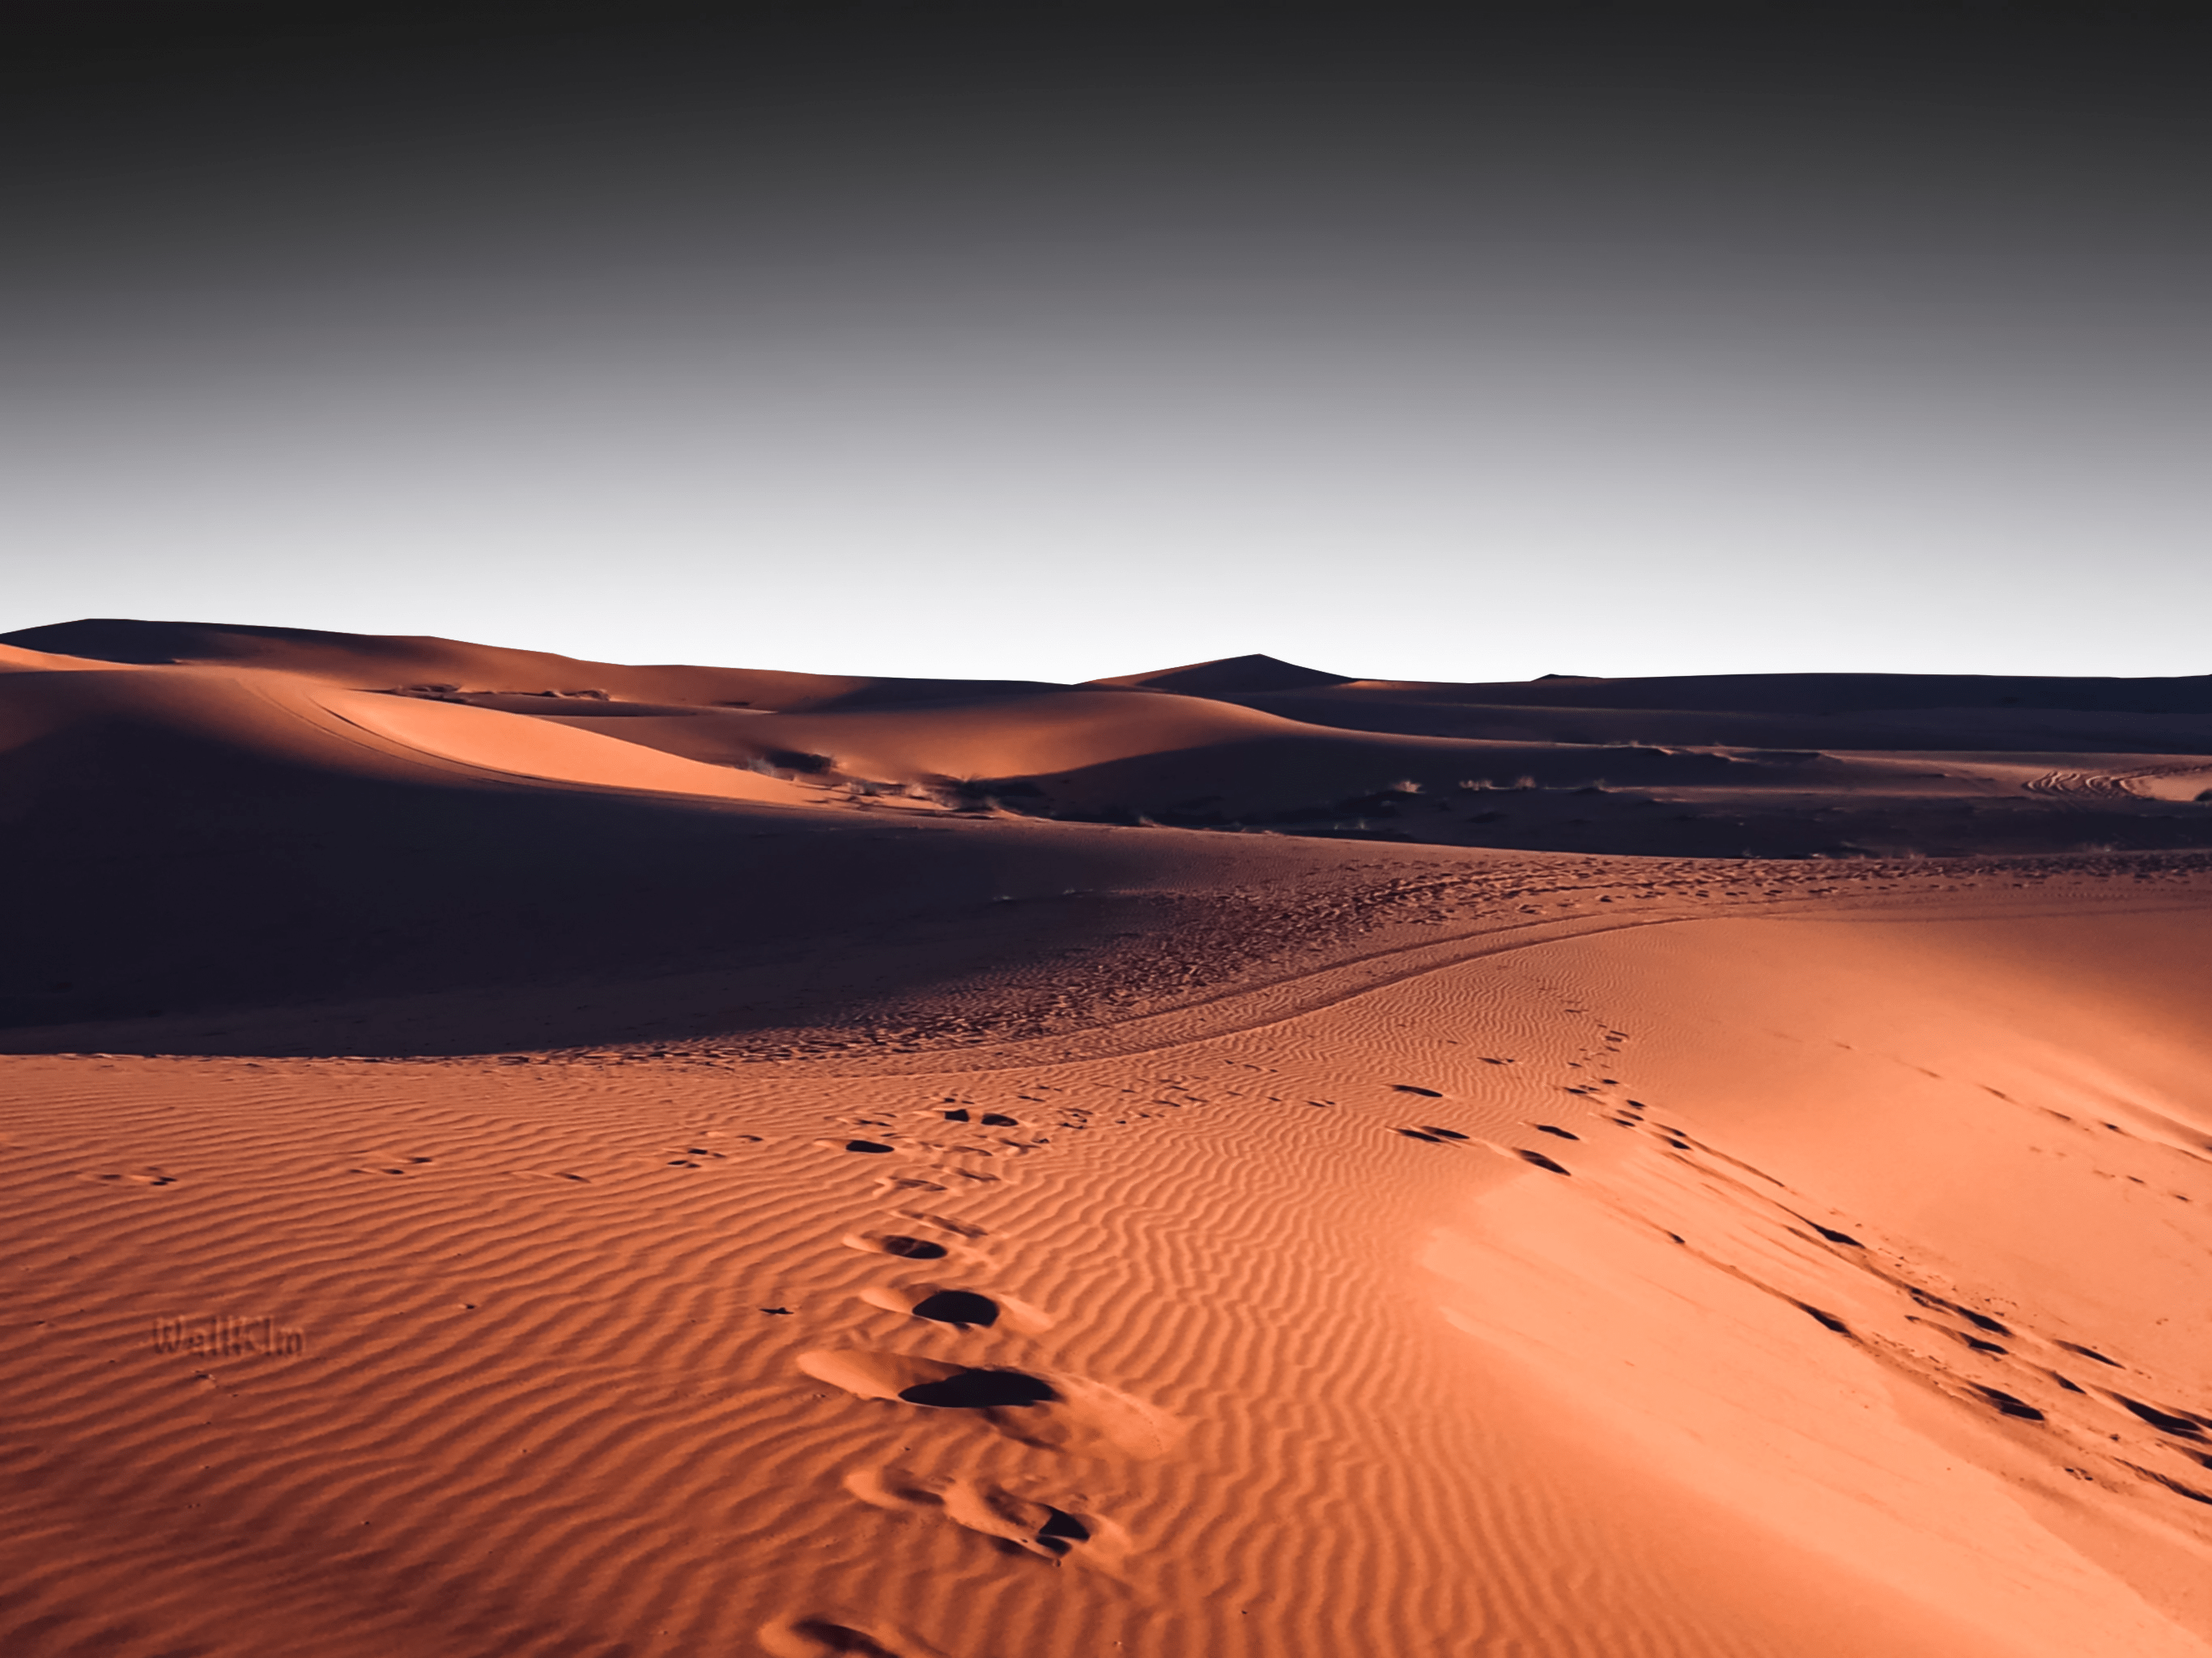 Desert Minimal